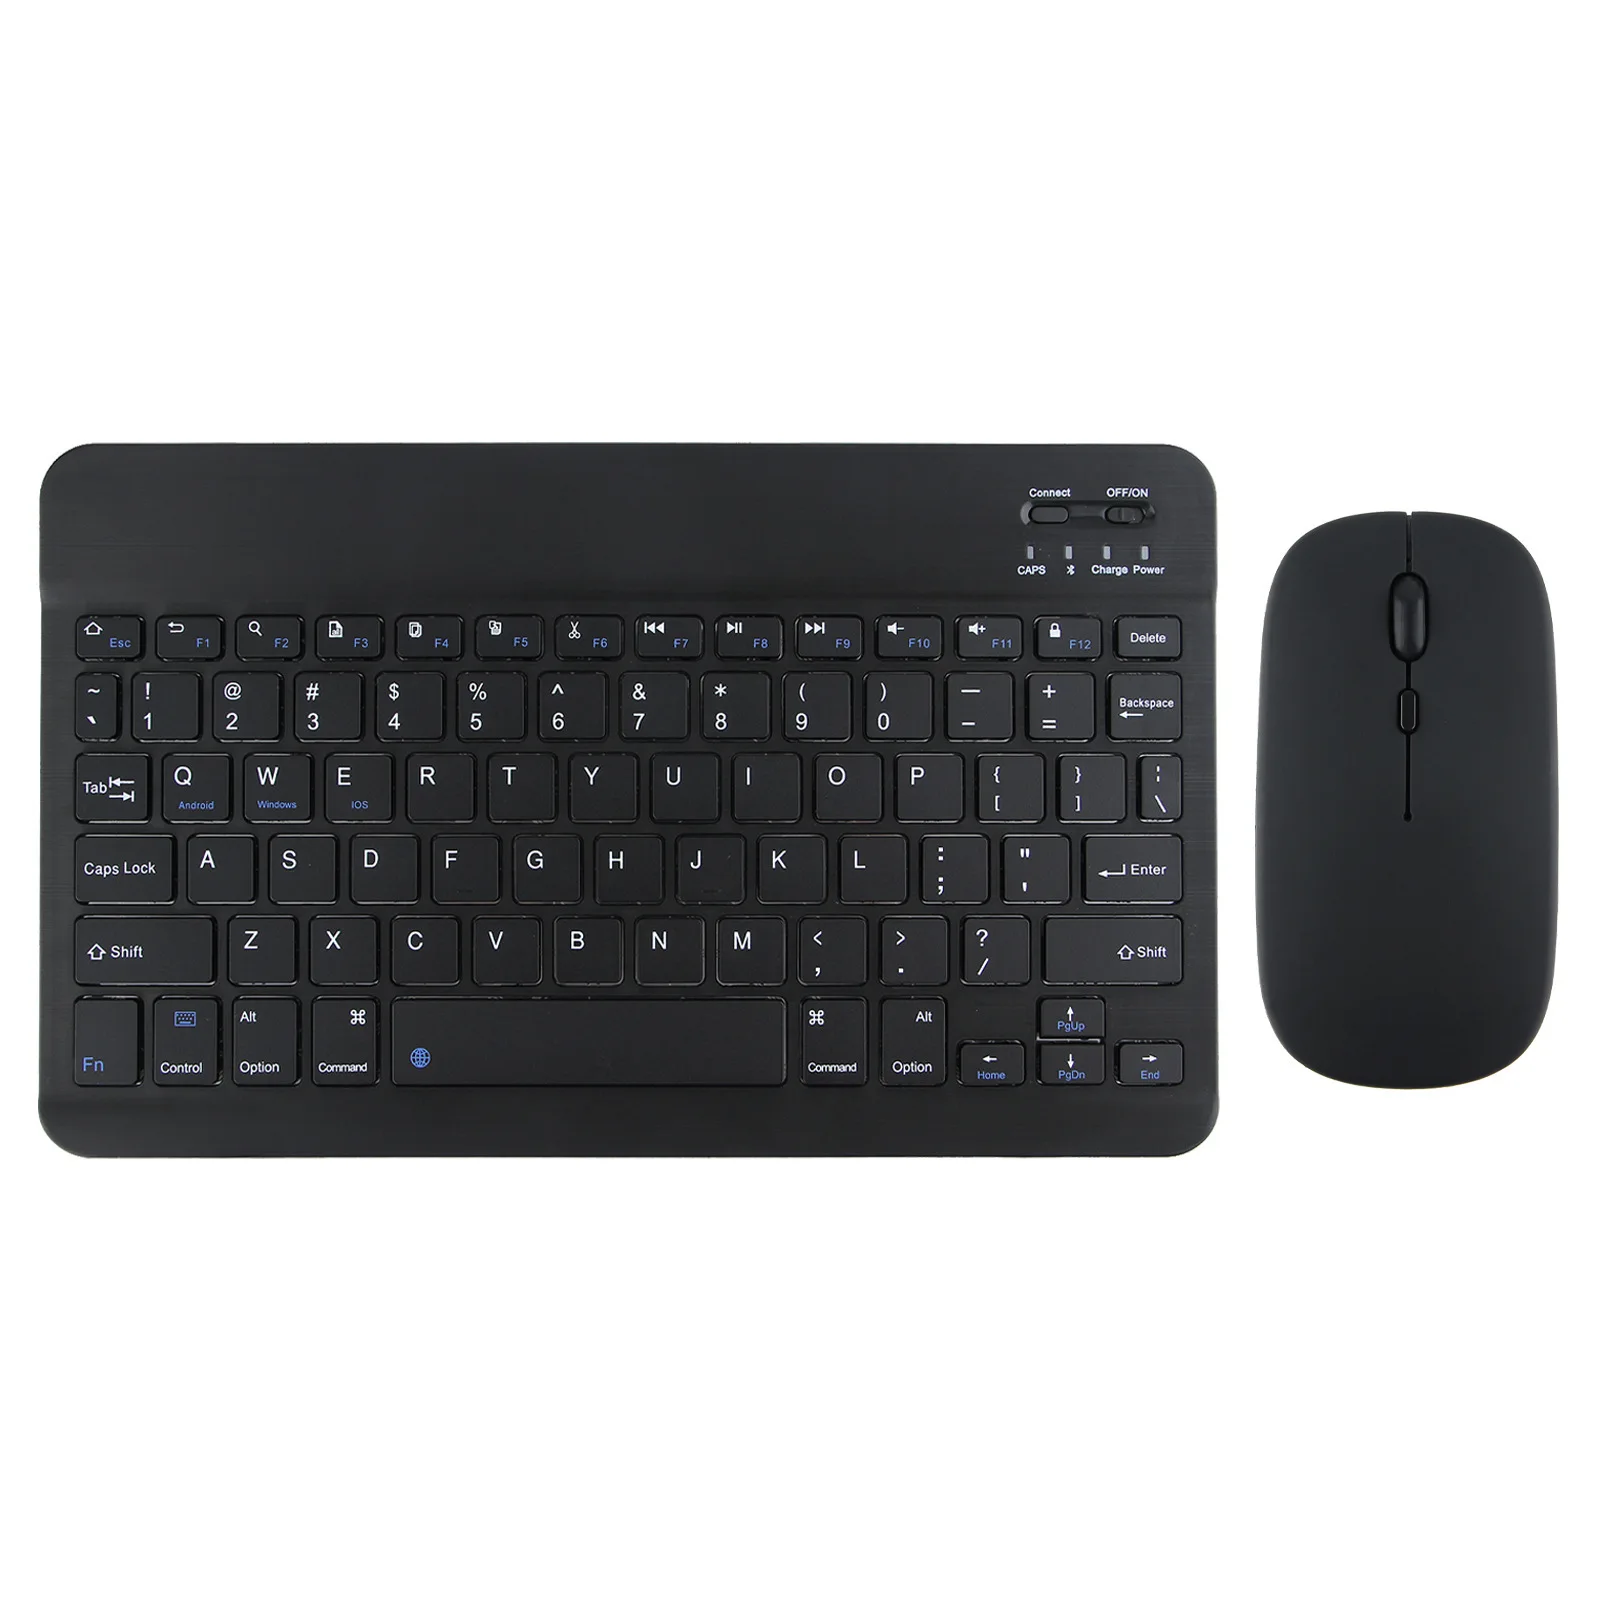 Многоязычная клавиатура X5 Поддерживает мобильные телефоны / планшеты / компьютеры, Совместимые с несколькими устройствами, Эргономичный дизайн, интеллектуальная клавиатура